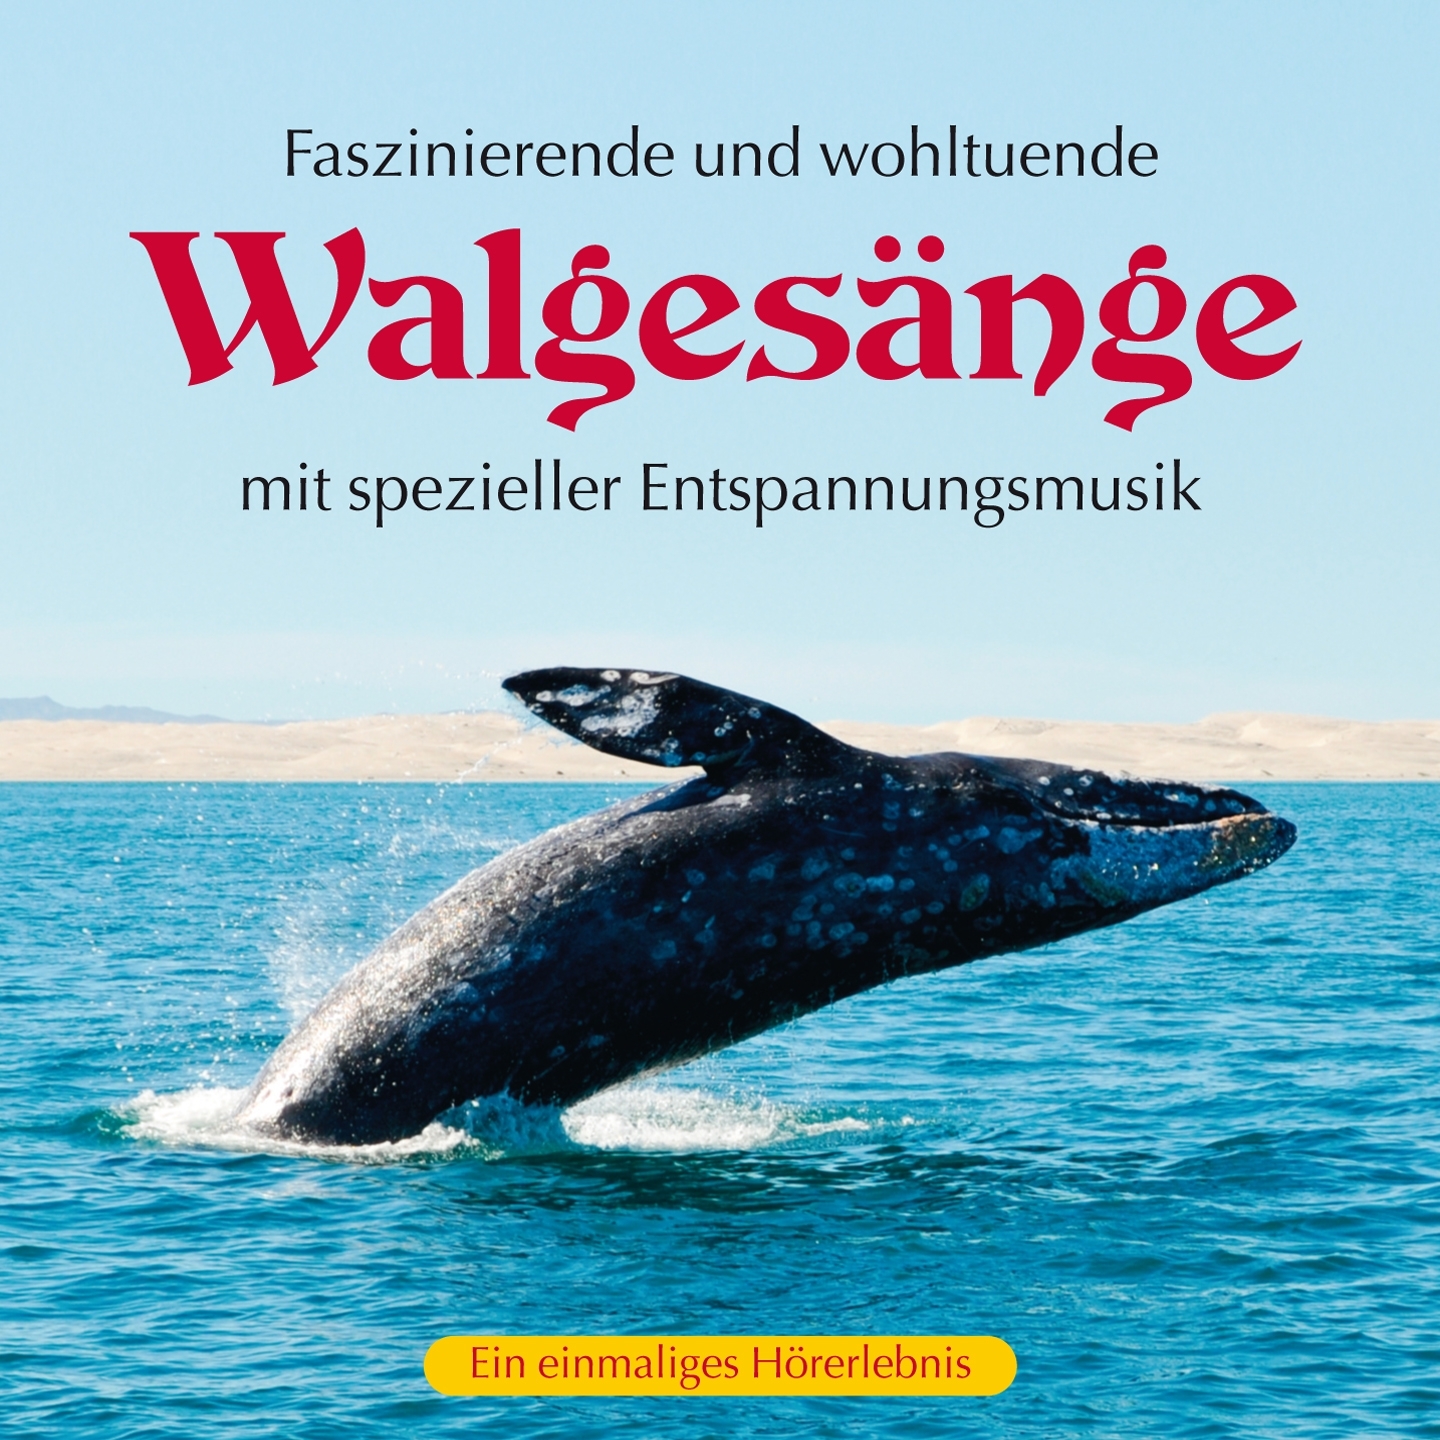 Die faszinierende Wanderschaft der Wale, Pt.2